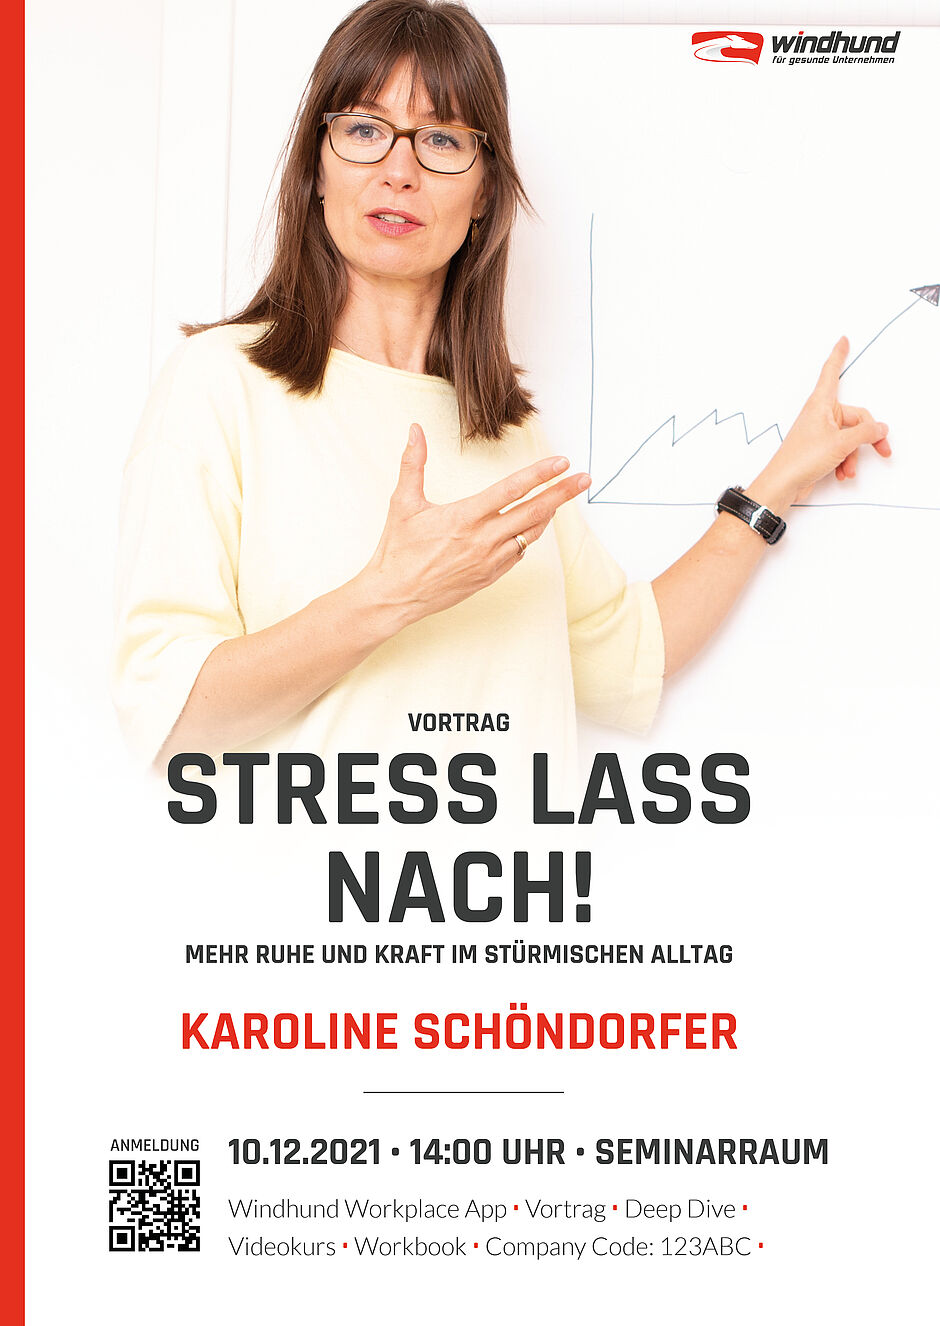 Windhund Expertin Karoline Schöndorfer